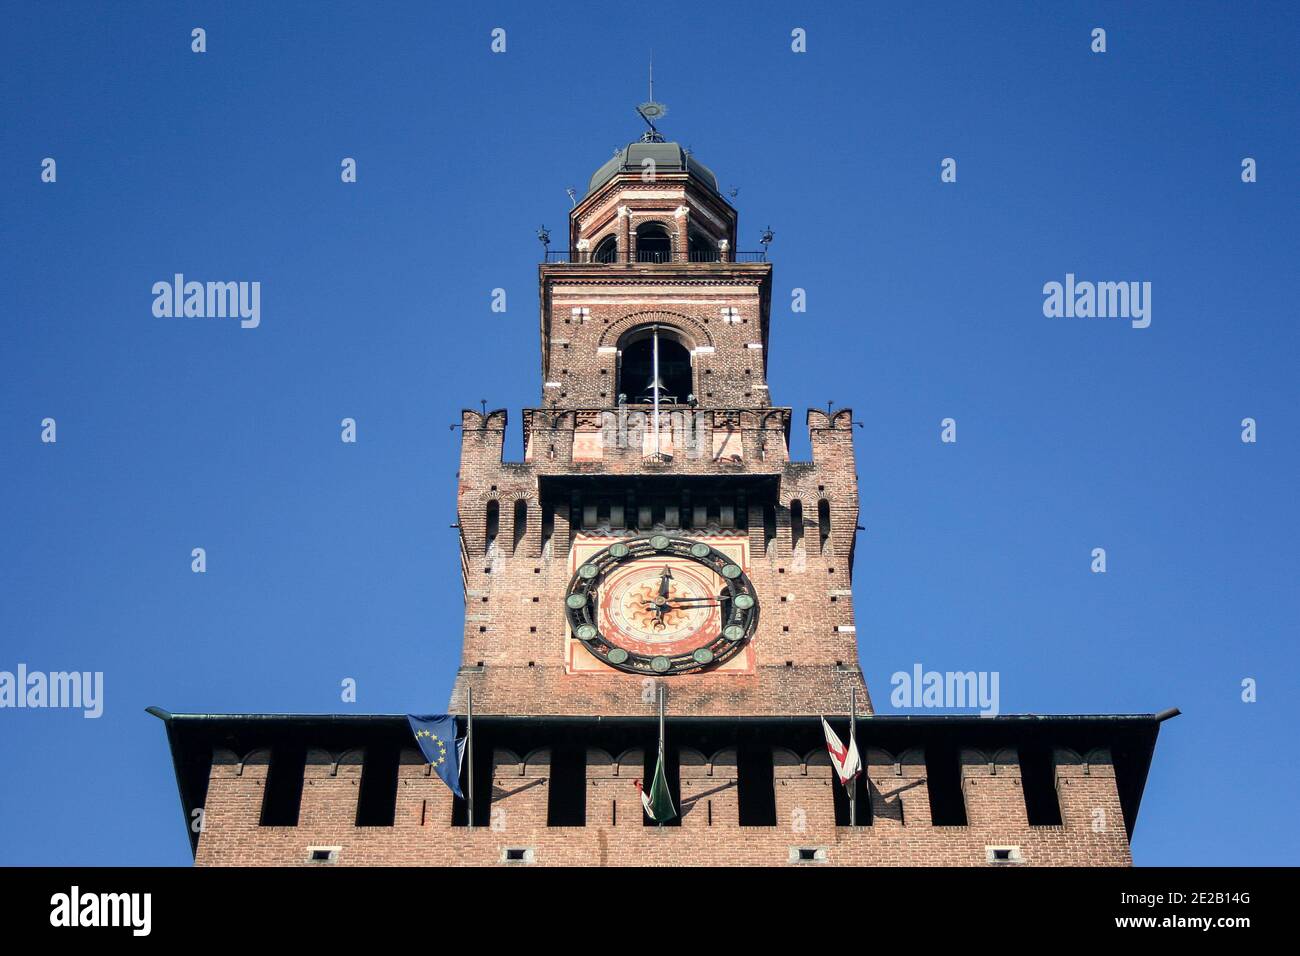 La torre dell'orologio del Castello Sforzesco di Milano, fu costruita nel XV secolo da Francesco Sforza, duca di Milano Lombardia. Punto di riferimento dell'Italia. Foto di alta qualità Foto Stock